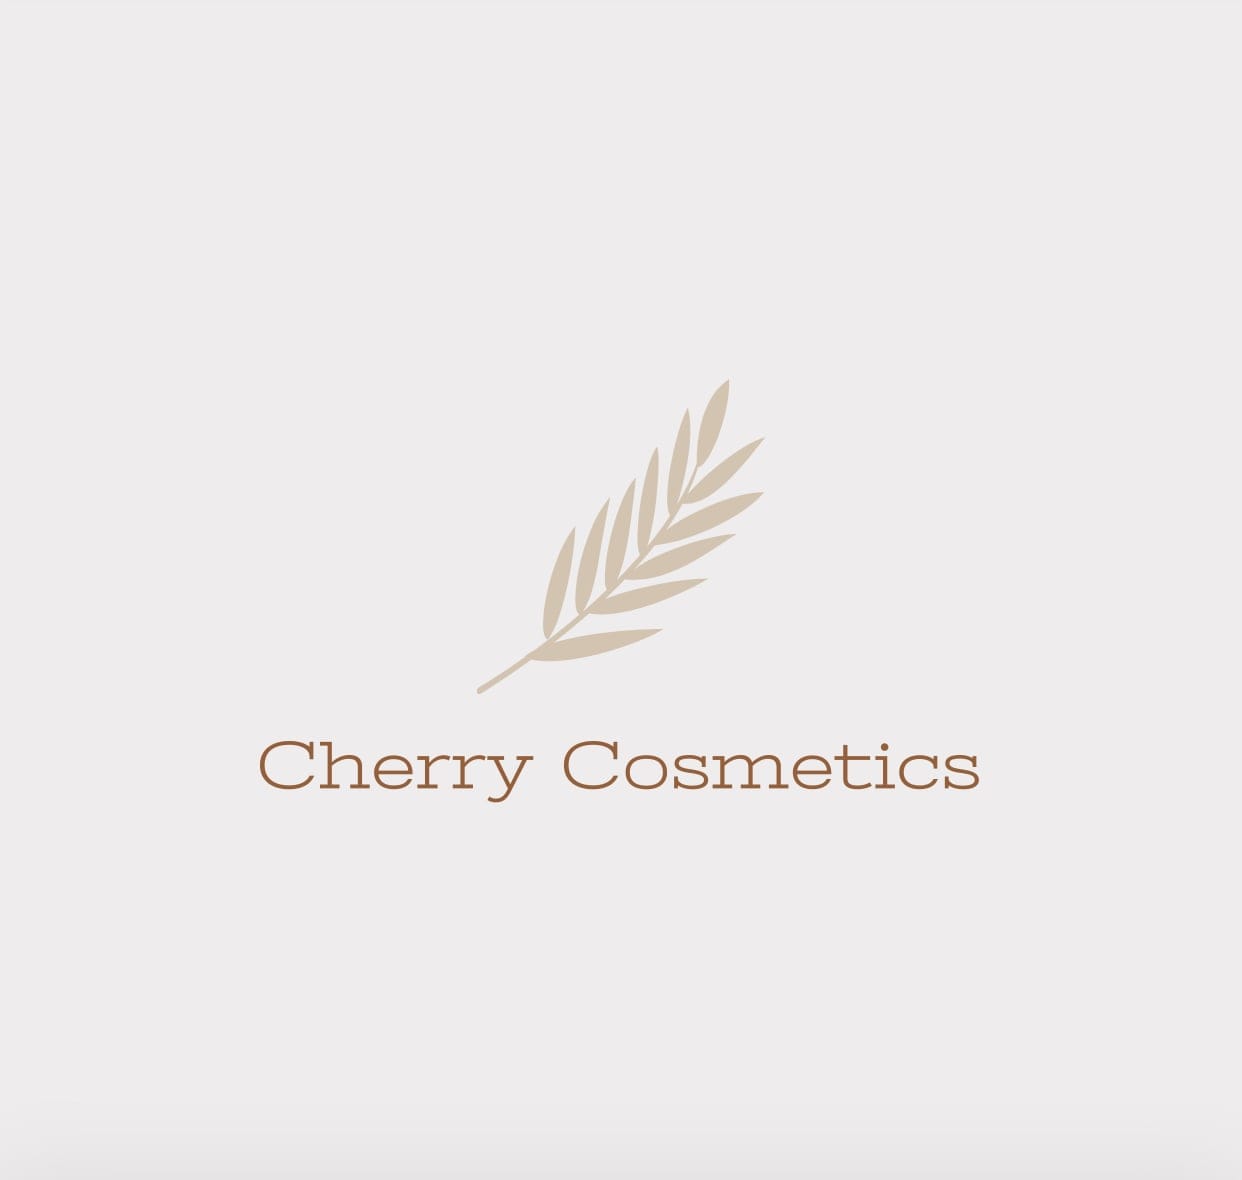 Cherry Cosmetics